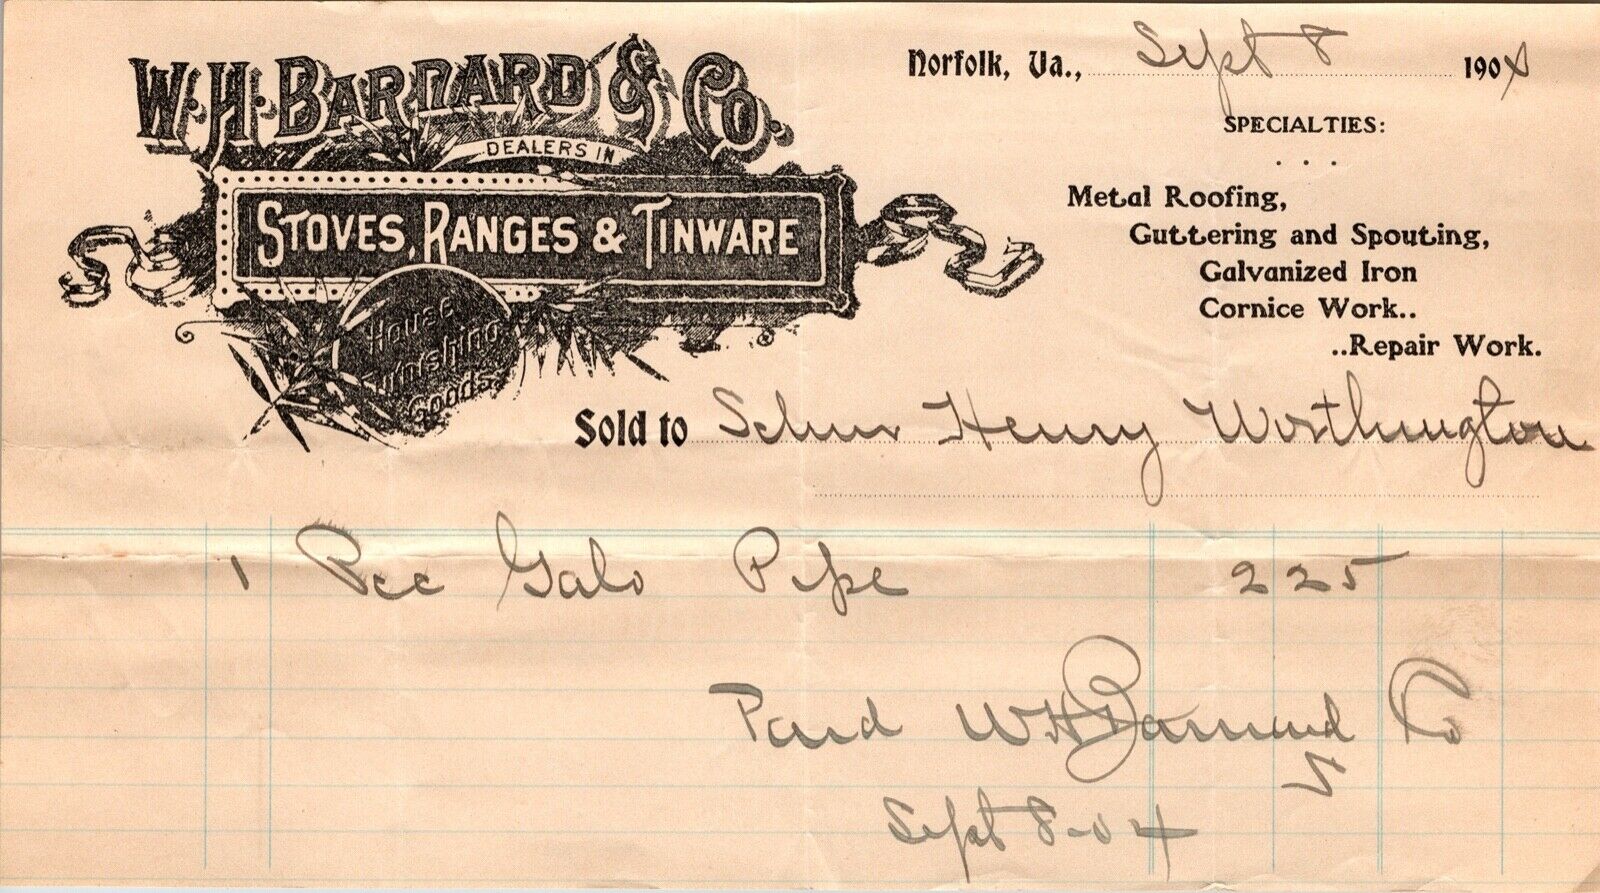 Antique Billhead Invoice Receipt W H. Barnard Stoves Ranes Tinware Norfolk VA 